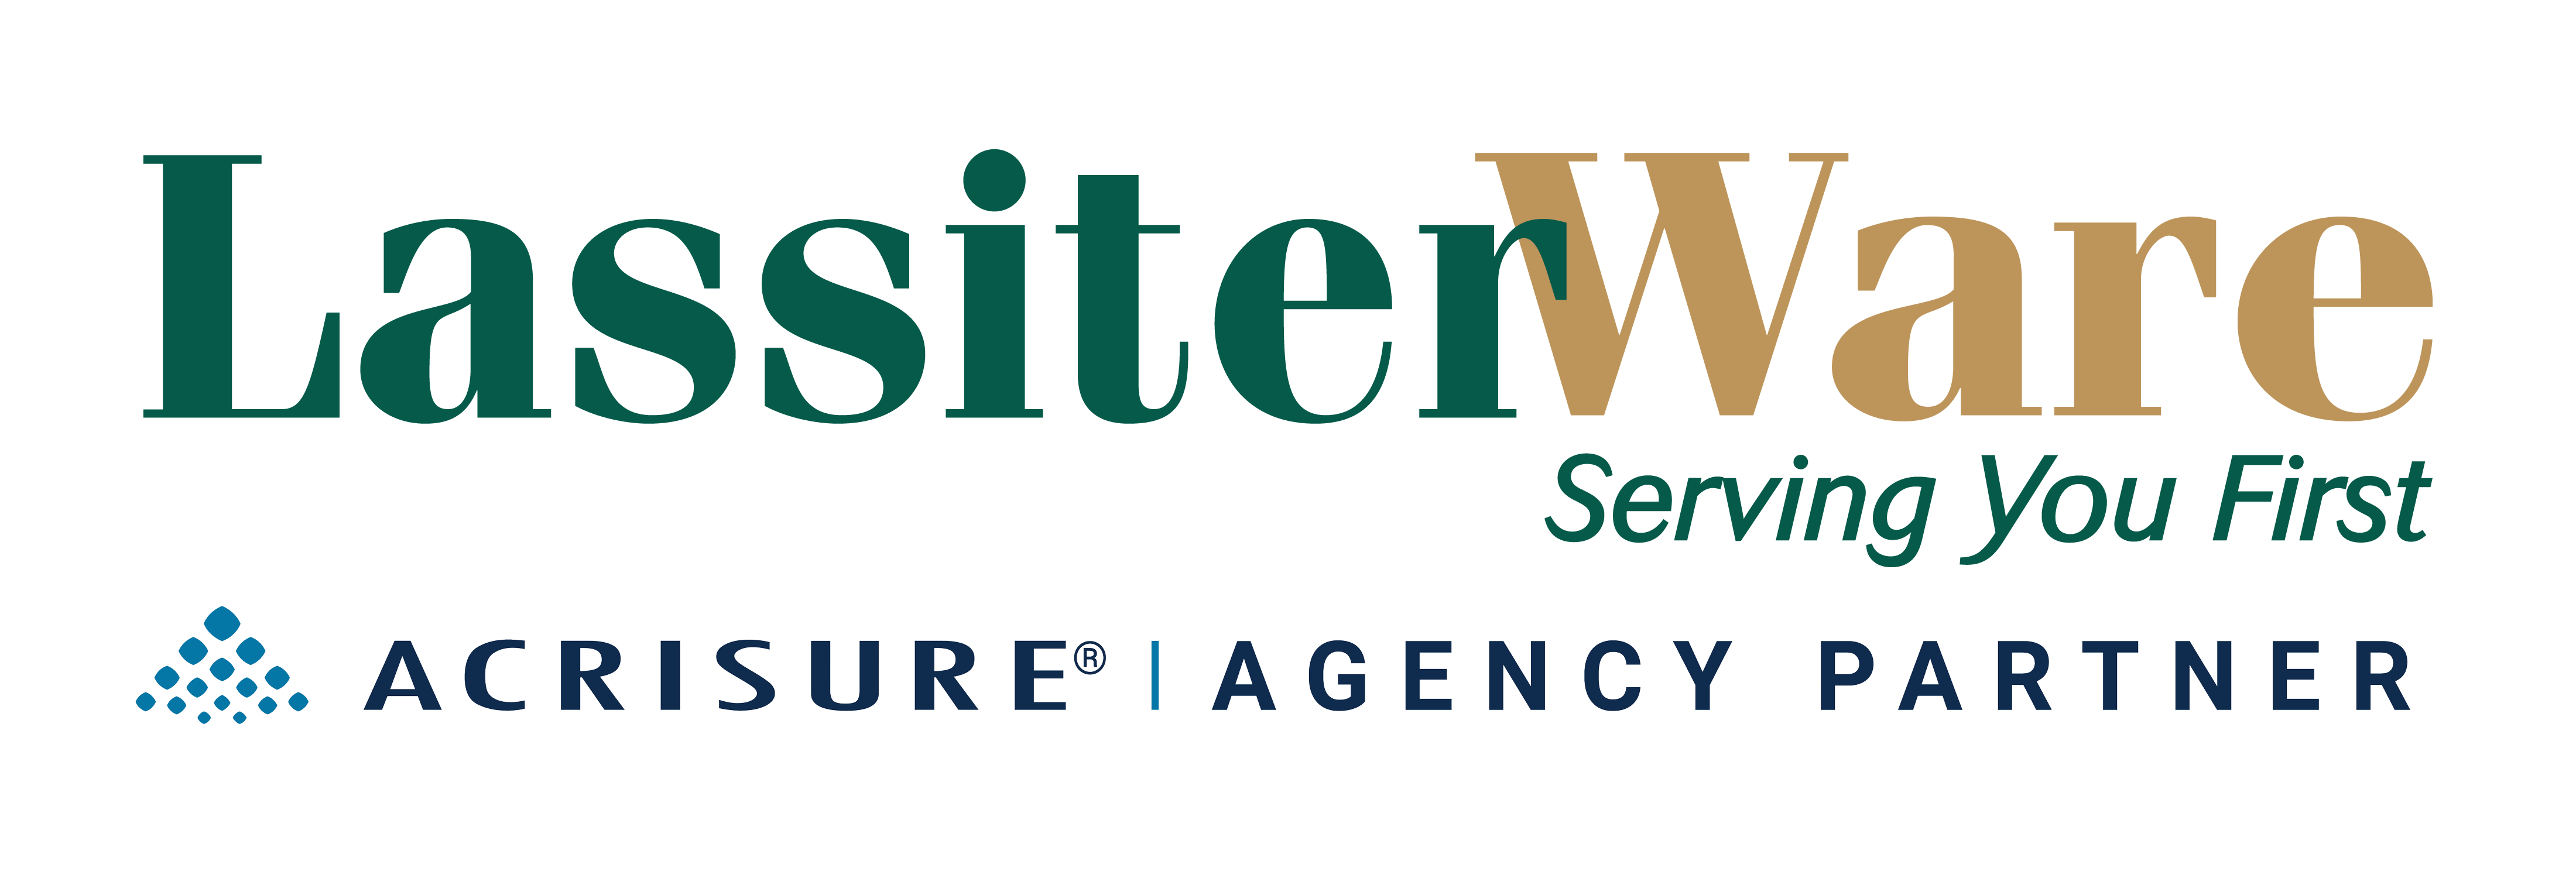 LassiterWare logo